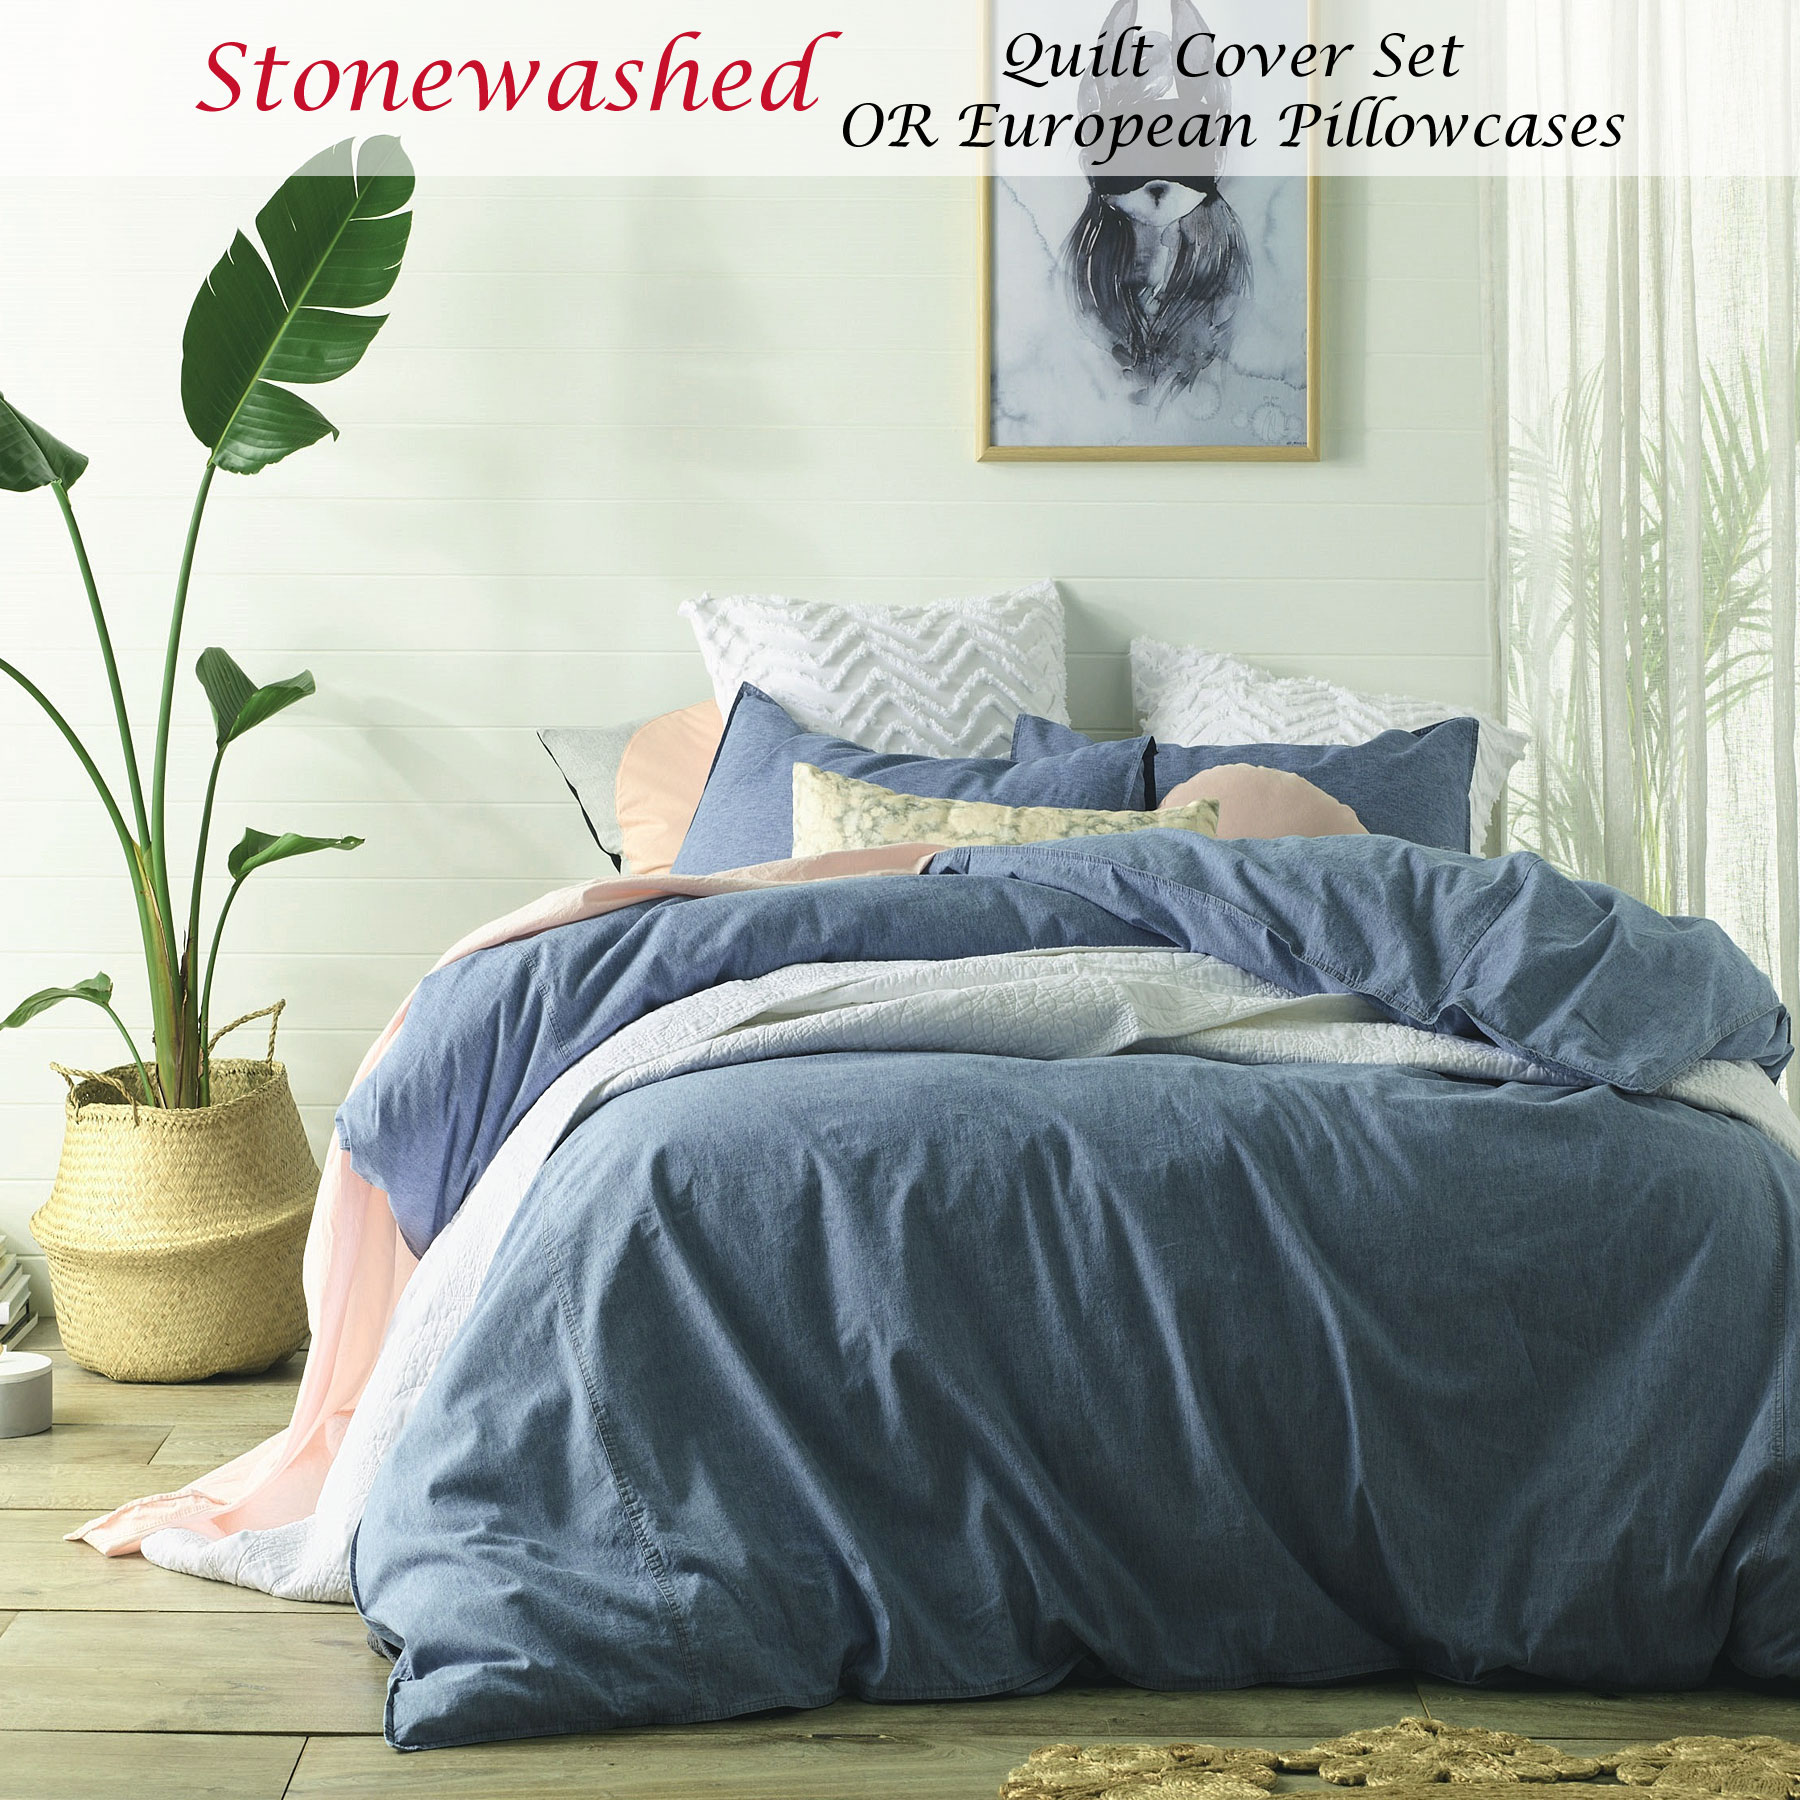 Stonewashed Denim Vintage Linen Cotton Quilt Cover Set Queen